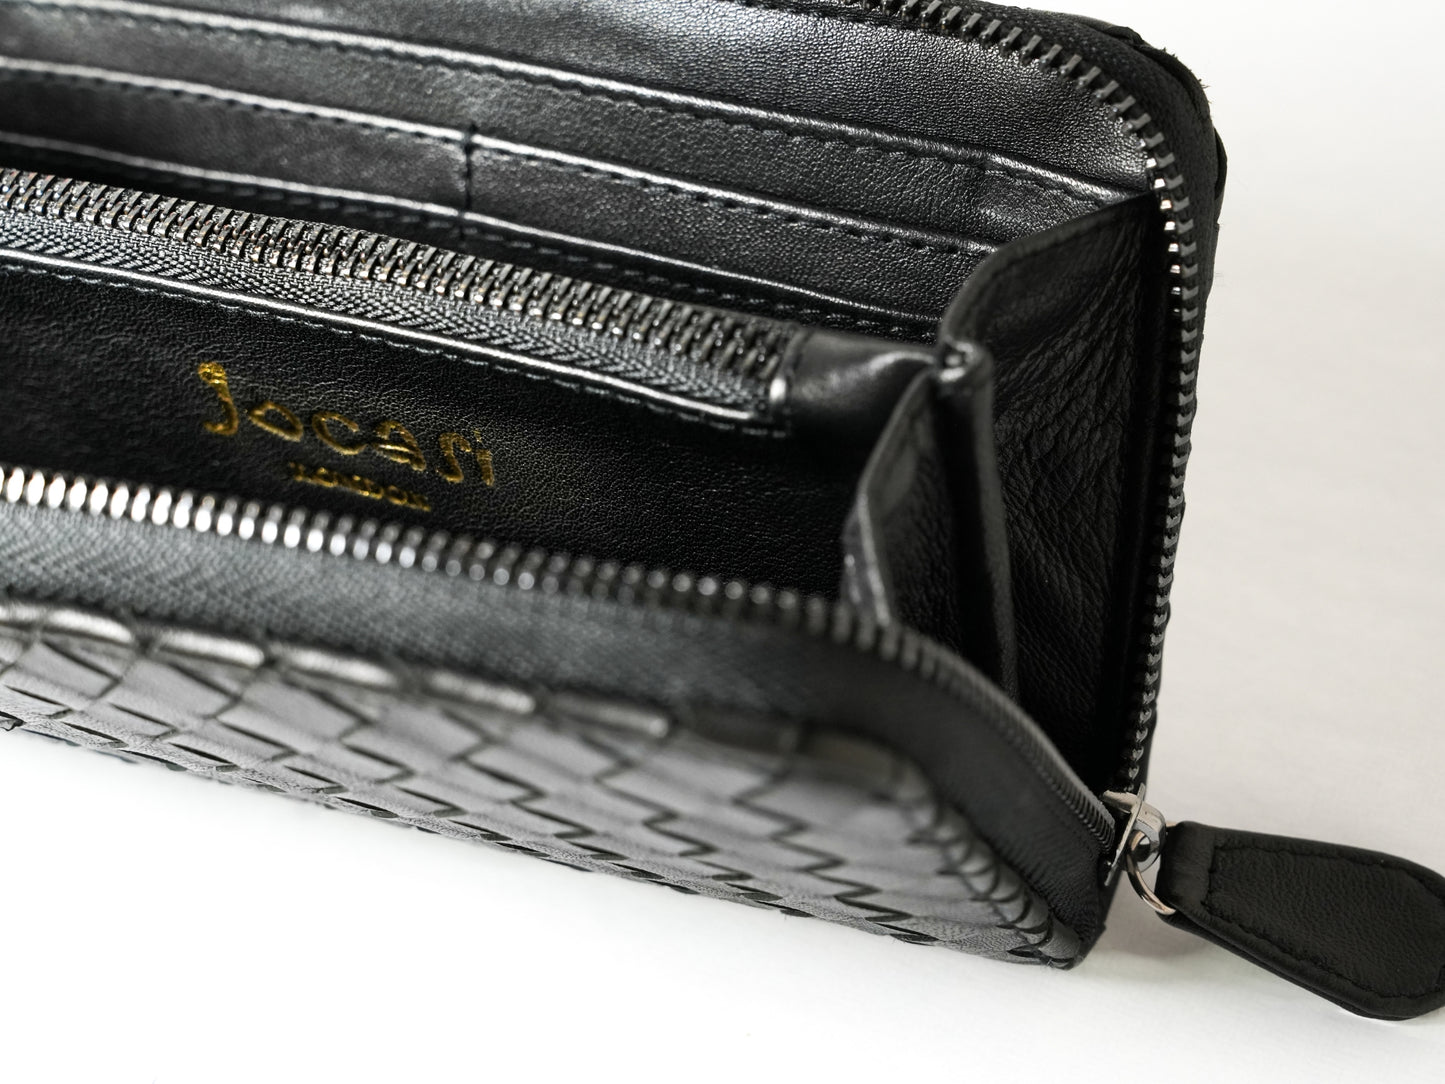 Paris Wallet in Black Woven Leather, Women Purse